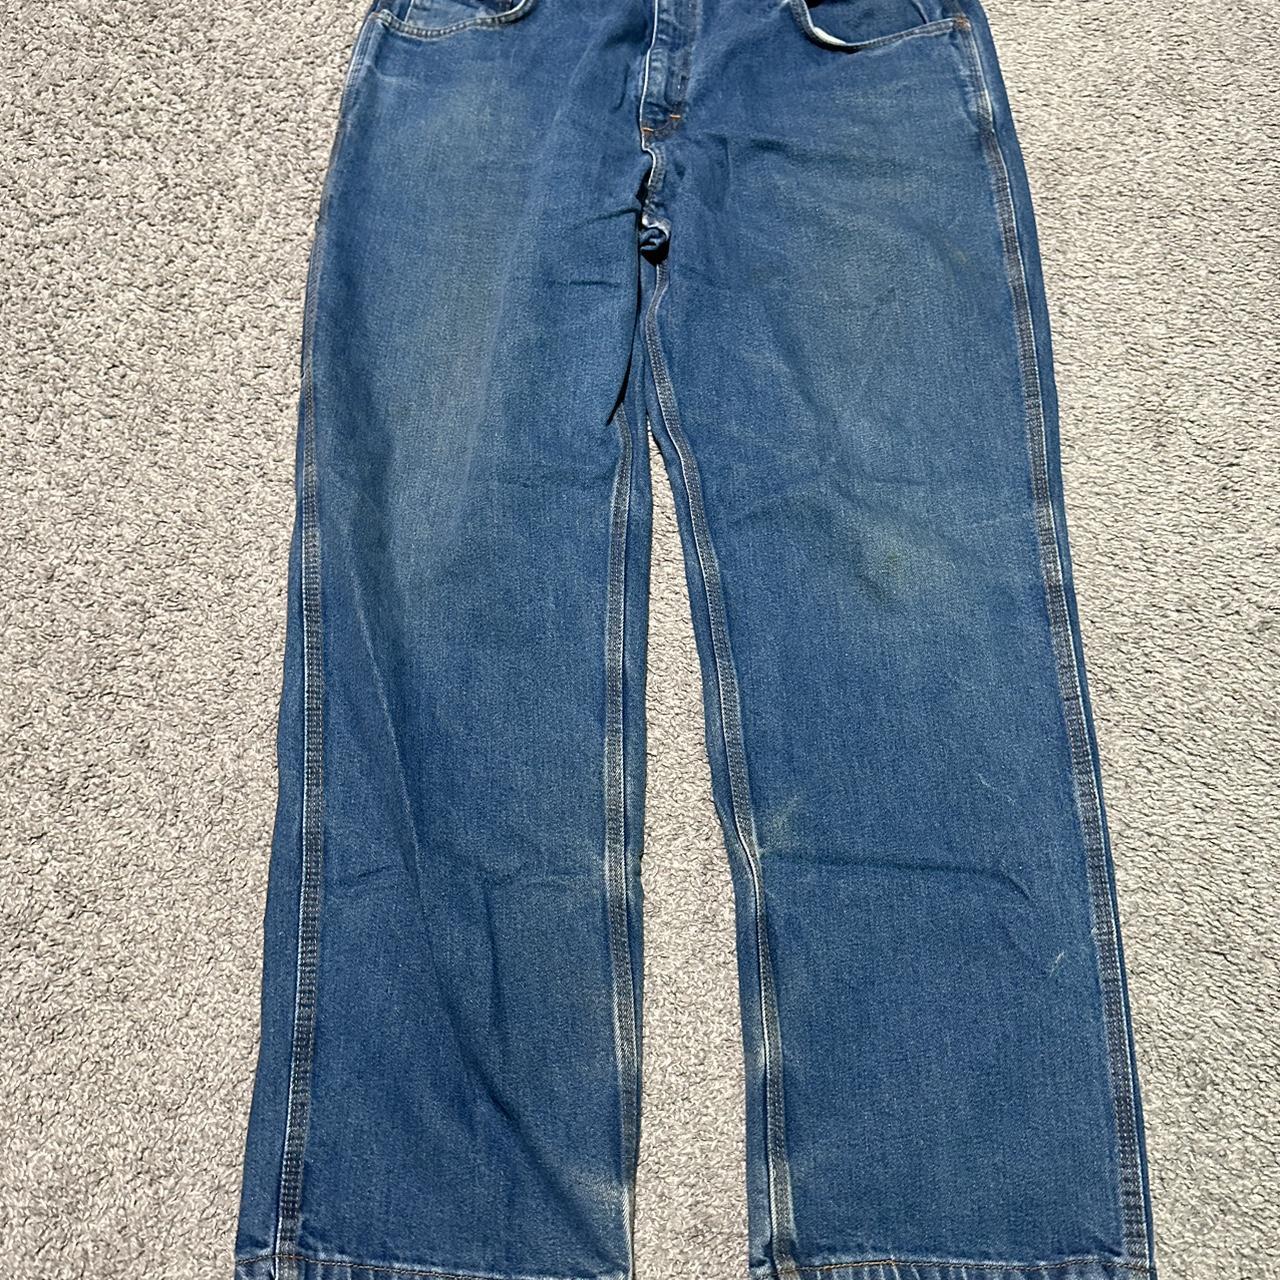 Vintage 90’s Baggy Carpeneter Jeans Men’s size... - Depop